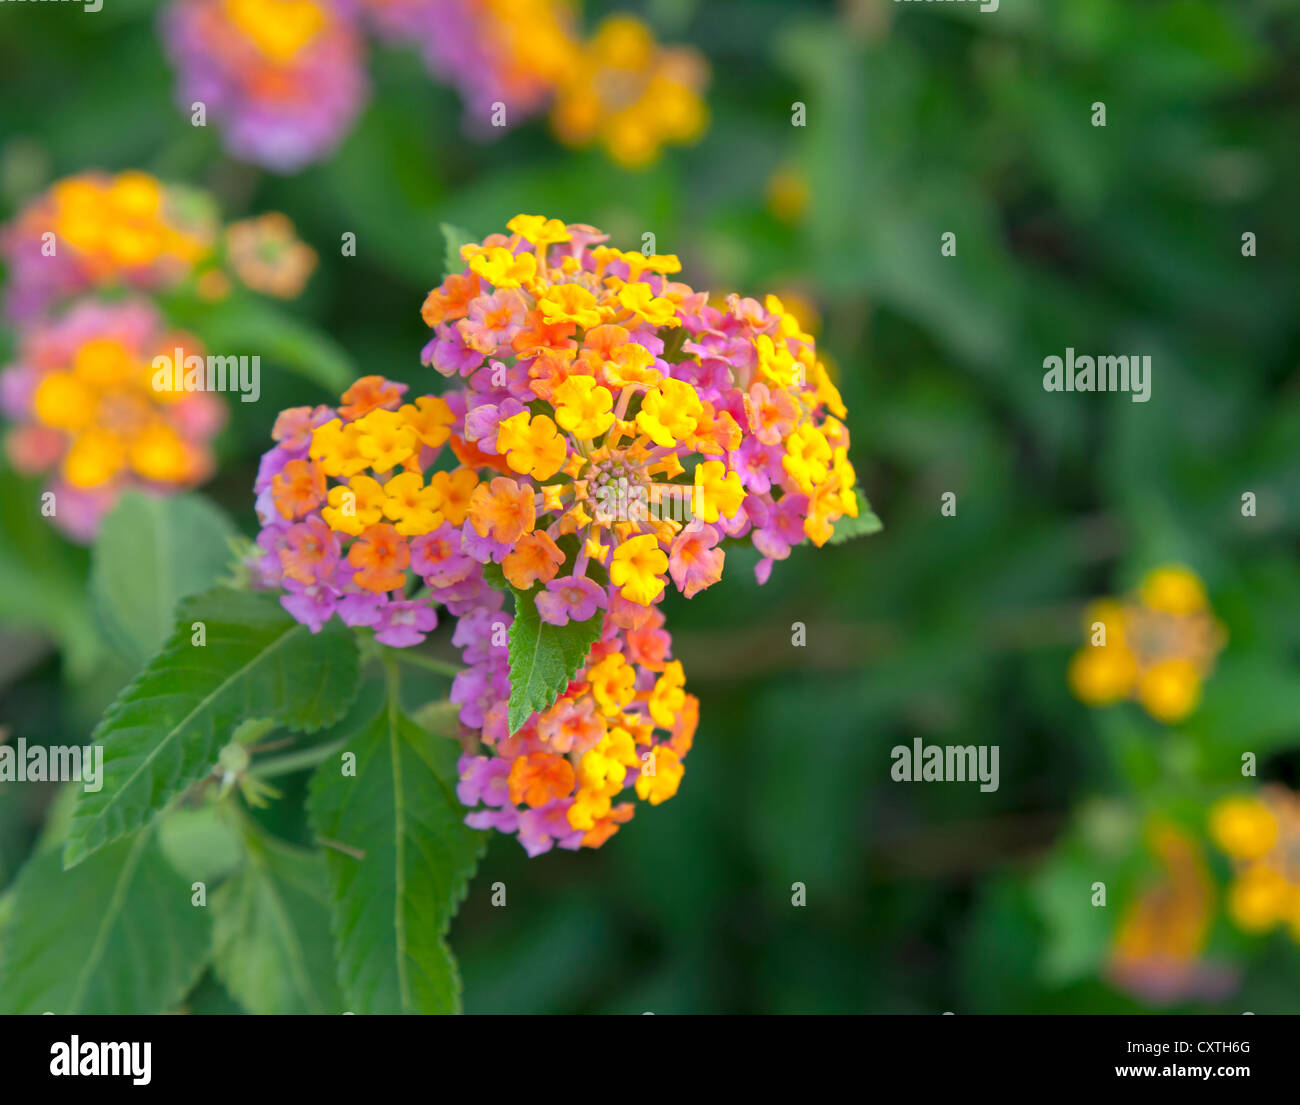 Leuchtend bunte Blumen im Garten. Nahaufnahme Foto Stockfoto